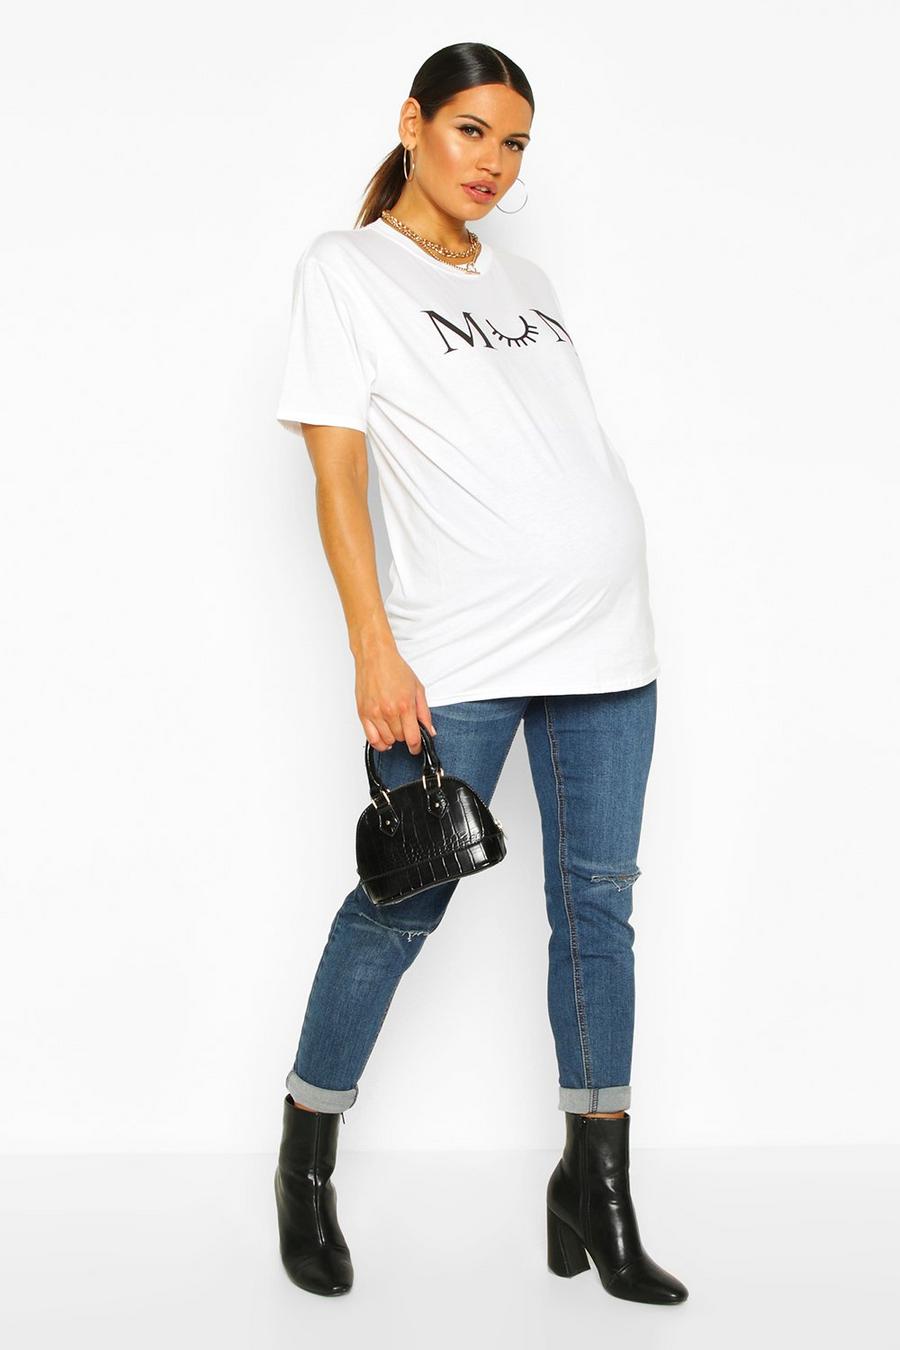 Camiseta “Mum Est 2020” Premamá image number 1